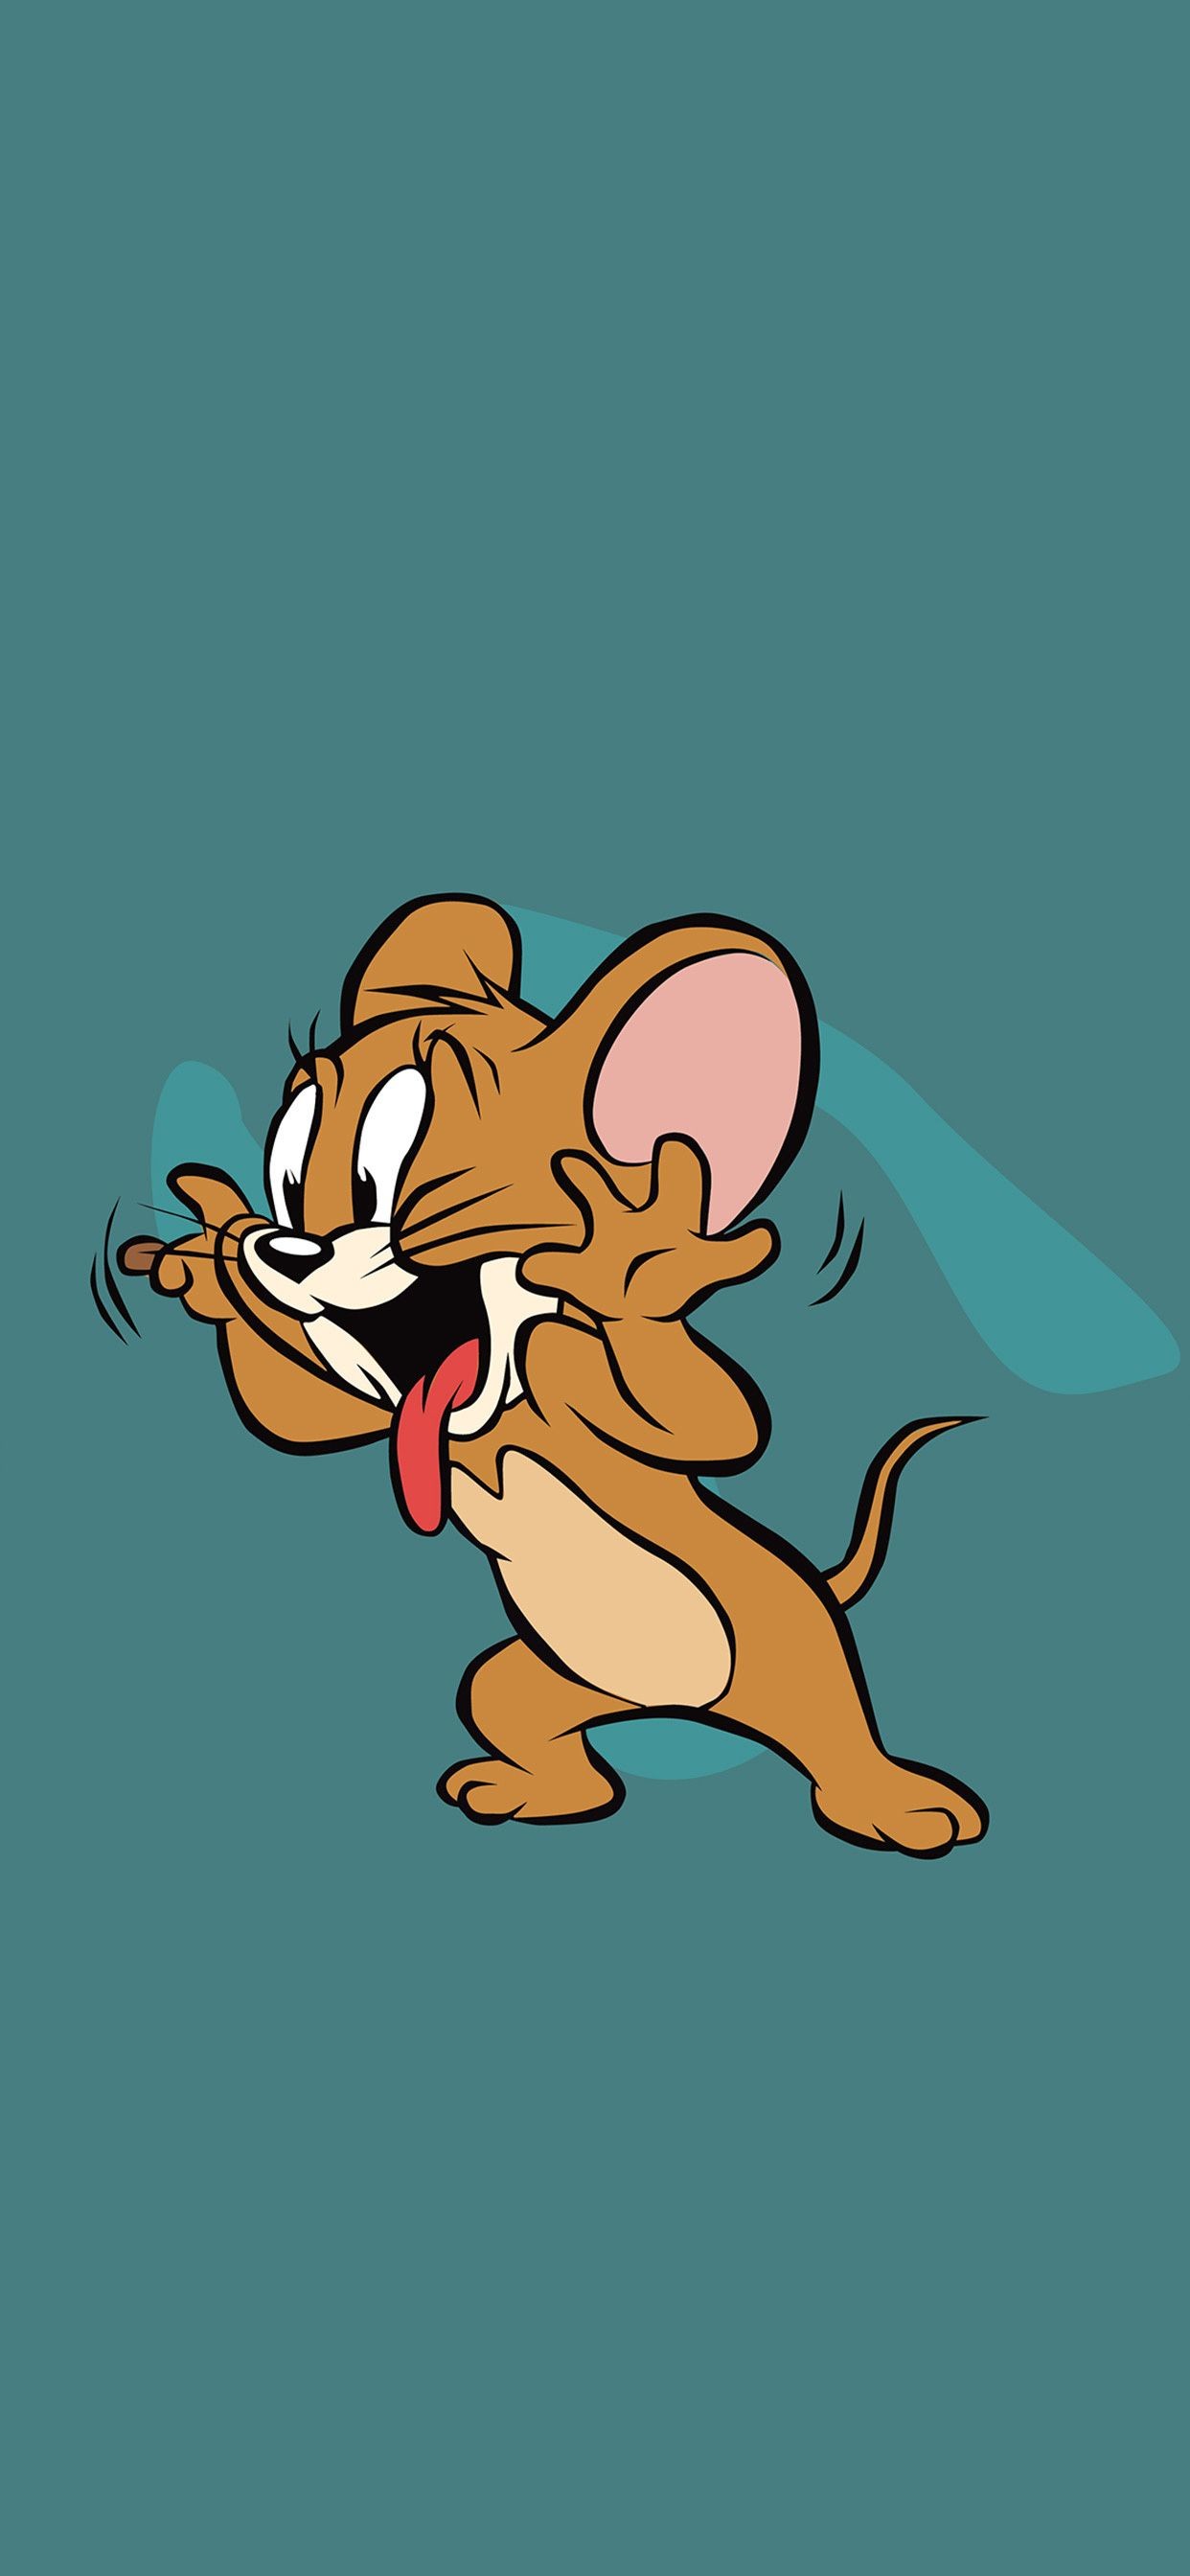 Ảnh avatar đôi Tom và Jerry hài hước Ảnh Internet  Vintage cartoon  Tom và jerry Avatar